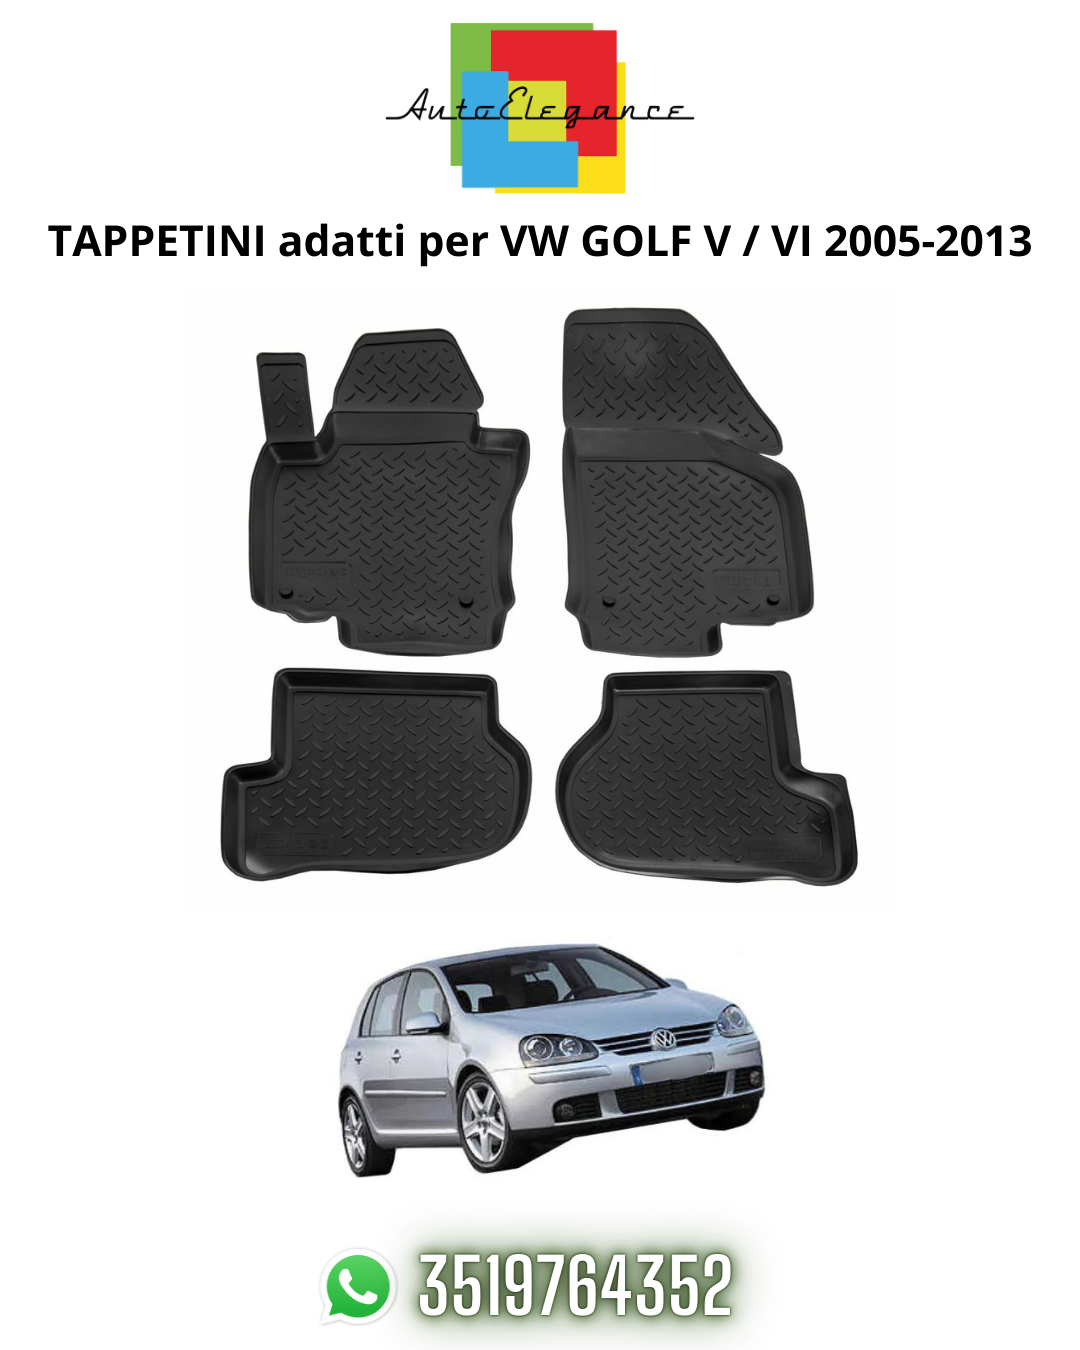 TAPPETI , TAPPETINI AUTO IN GOMMA ADATTI PER VW GOLF V / VI 2005-2013